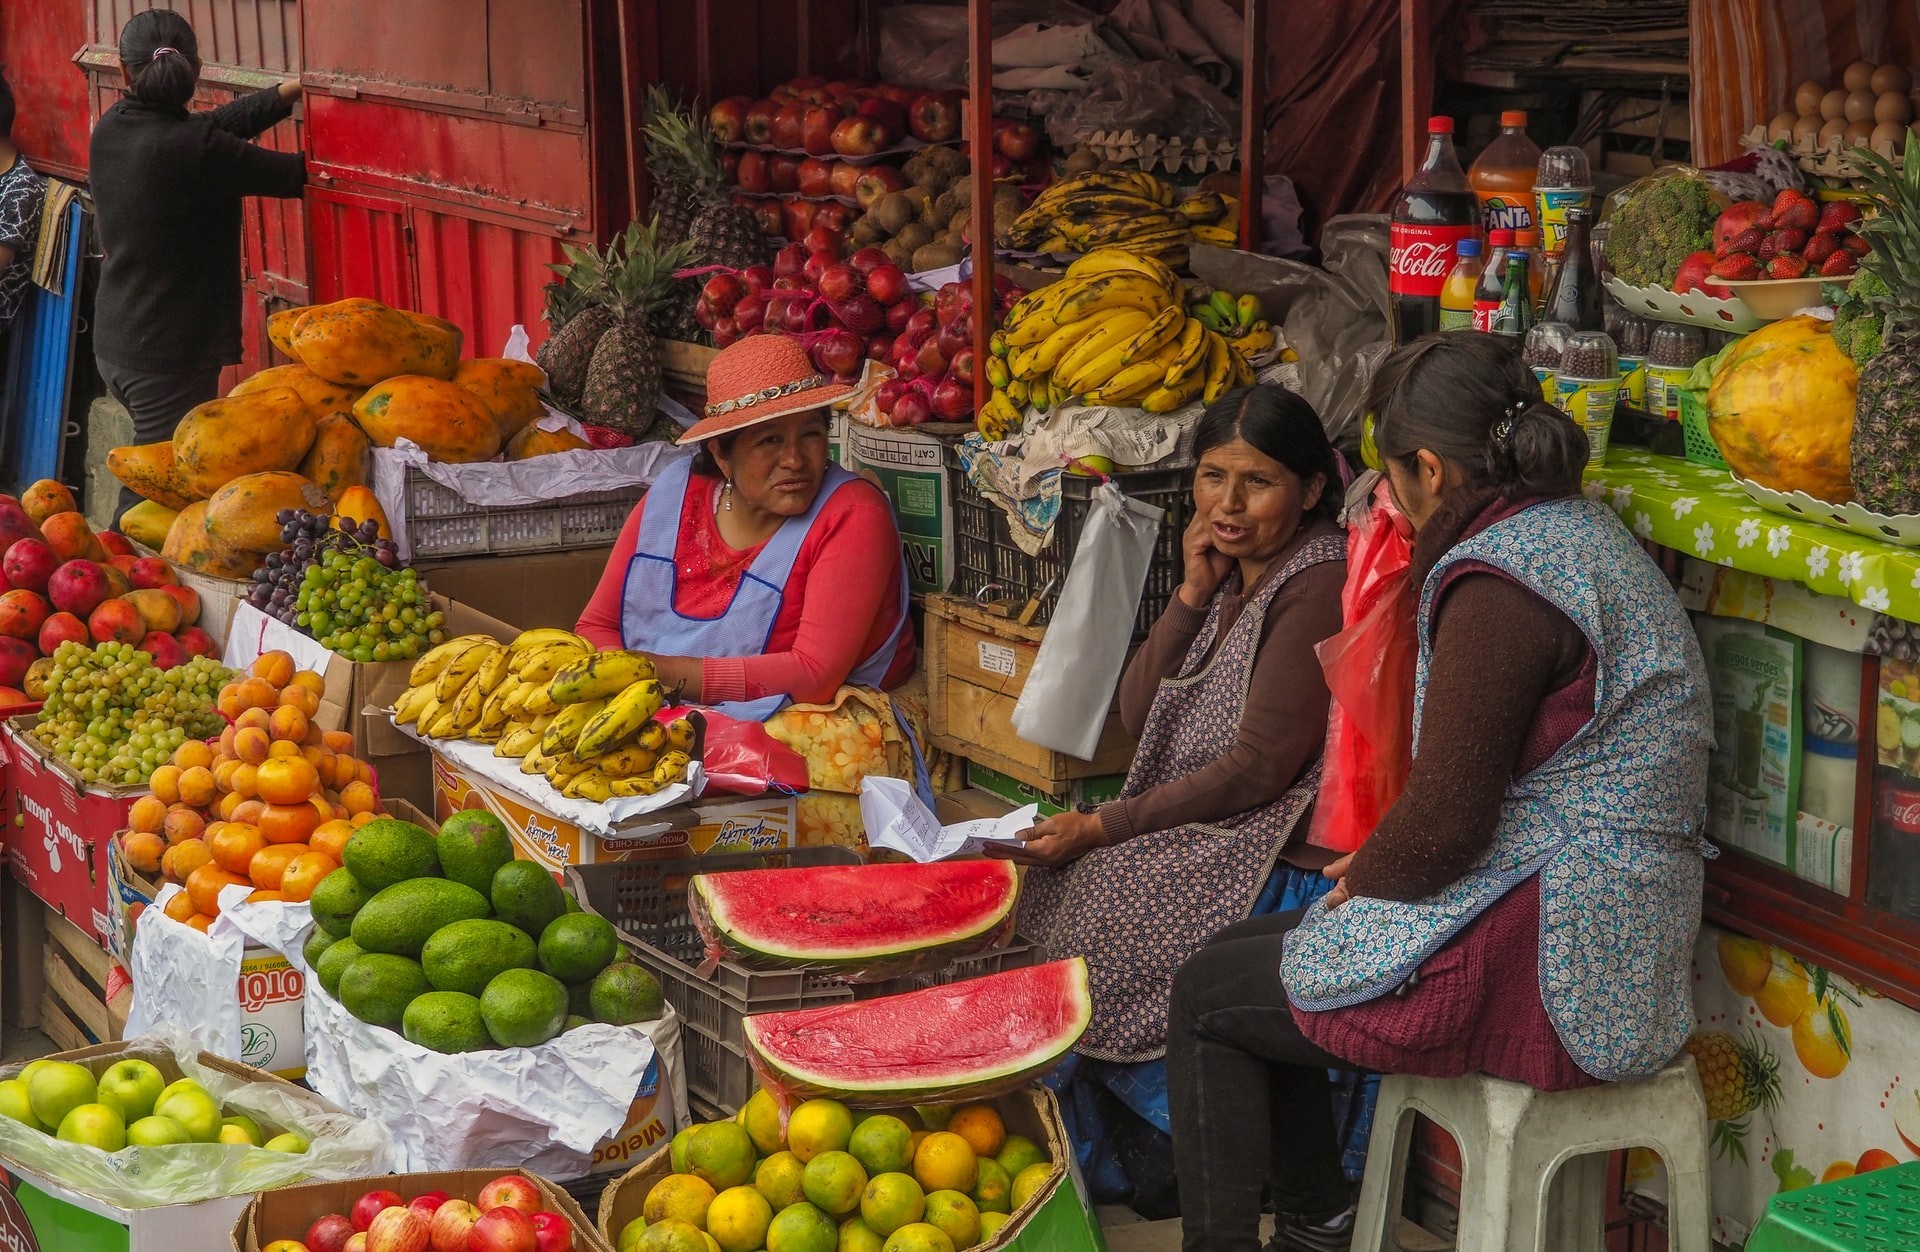 Market in Bolivia